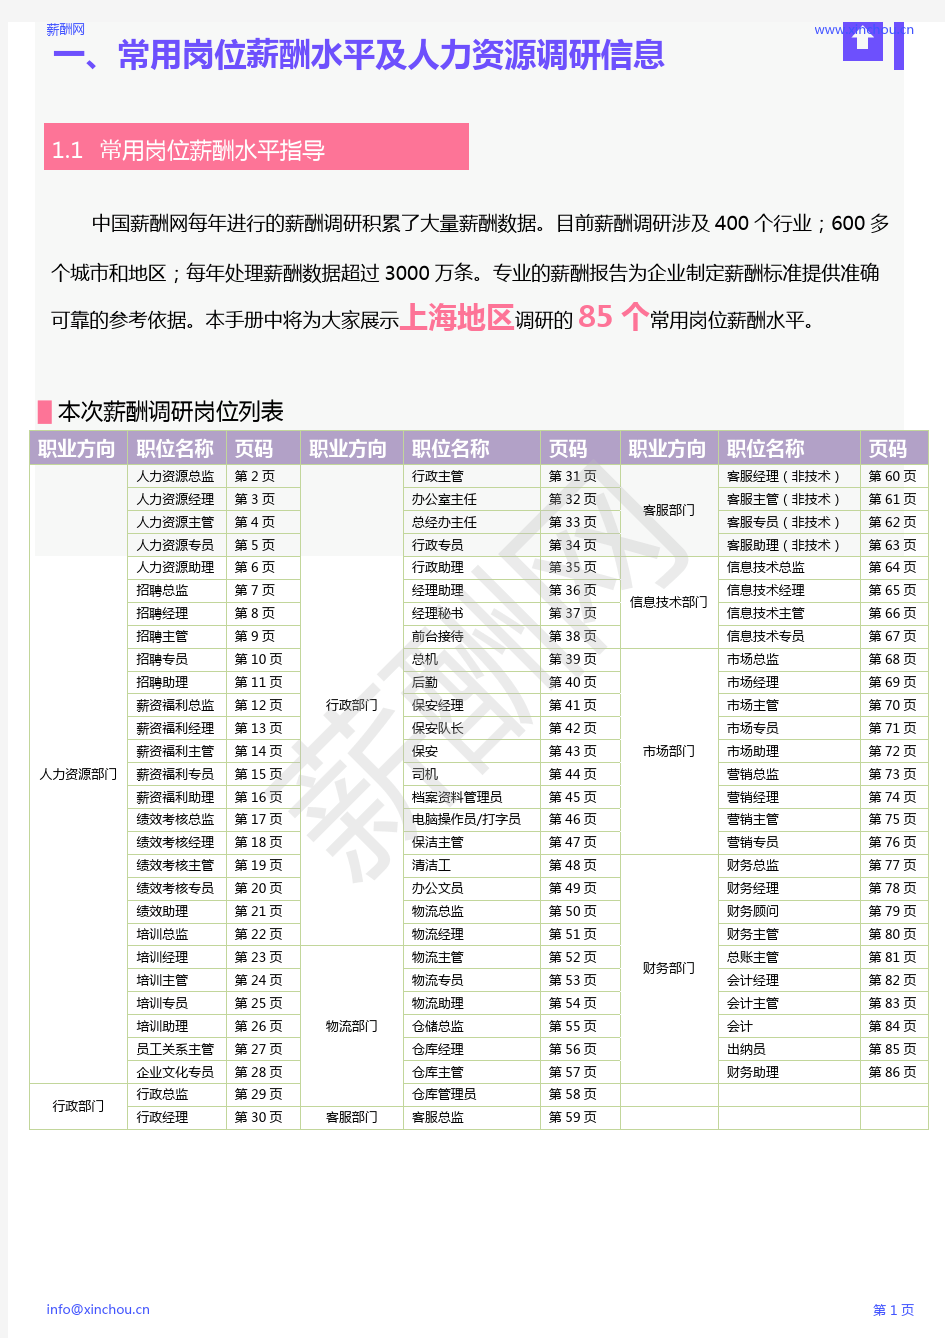 薪酬报告系列-2020年上海地区薪酬调查报告